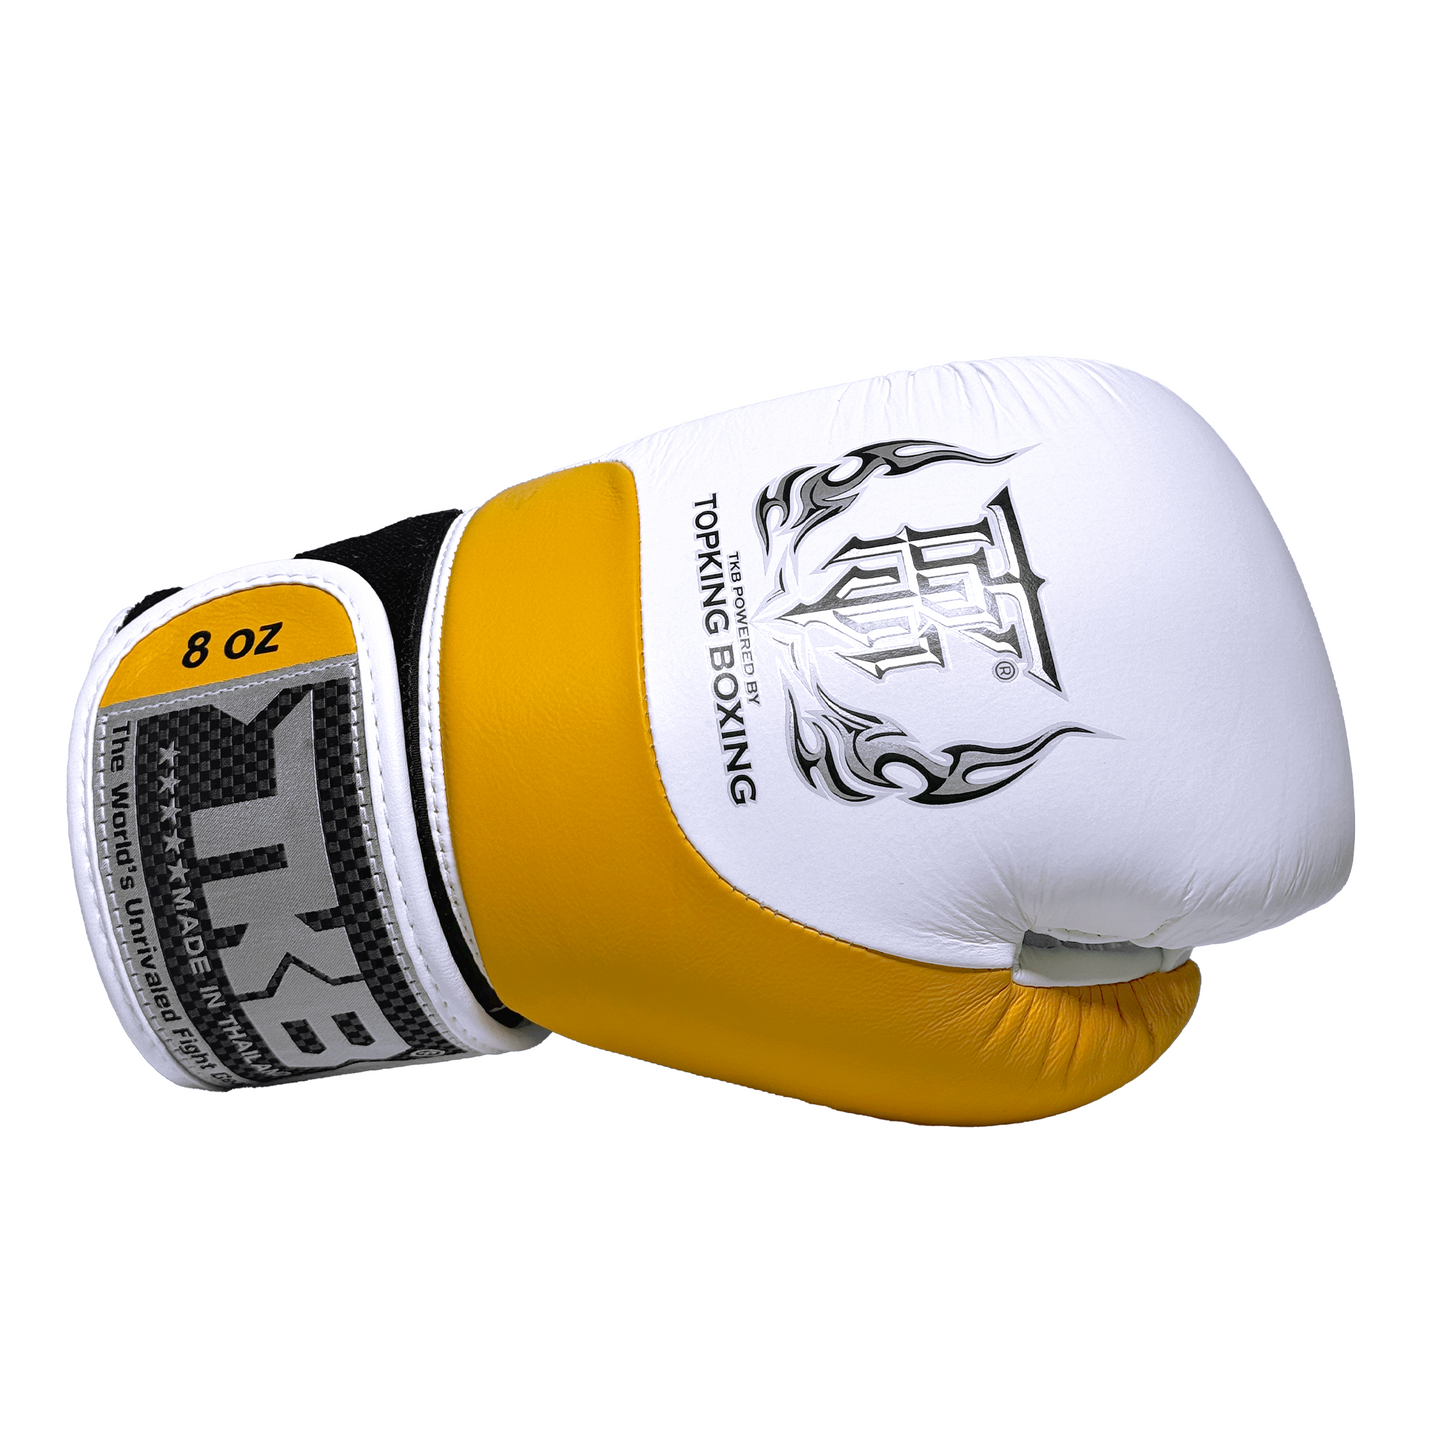 Top King Boxhandschuhe "Power" weiss/gelb